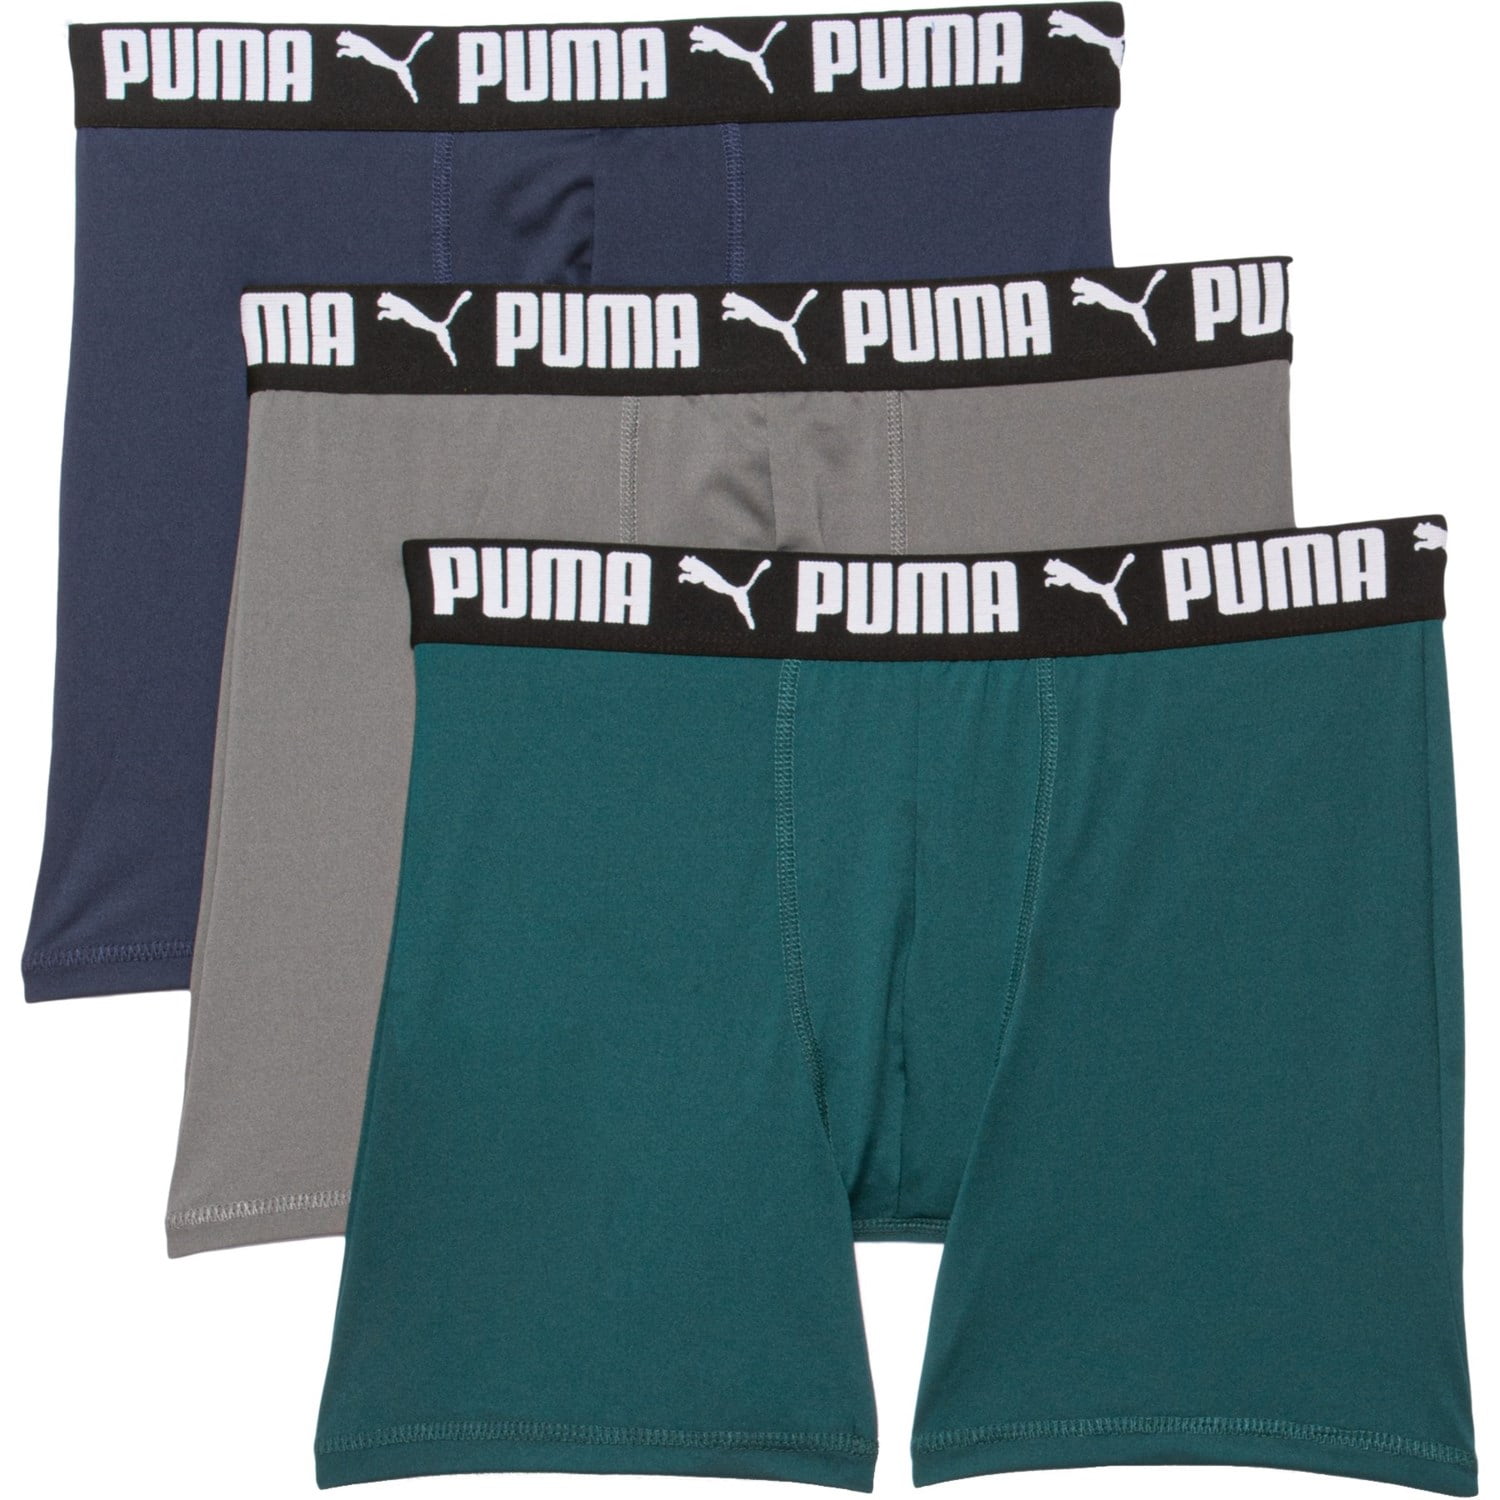 PUMA MEN'S 3 PACK - PHR GREEN NAVY XLARGE - BOXER BRIEF UNDERWEAR